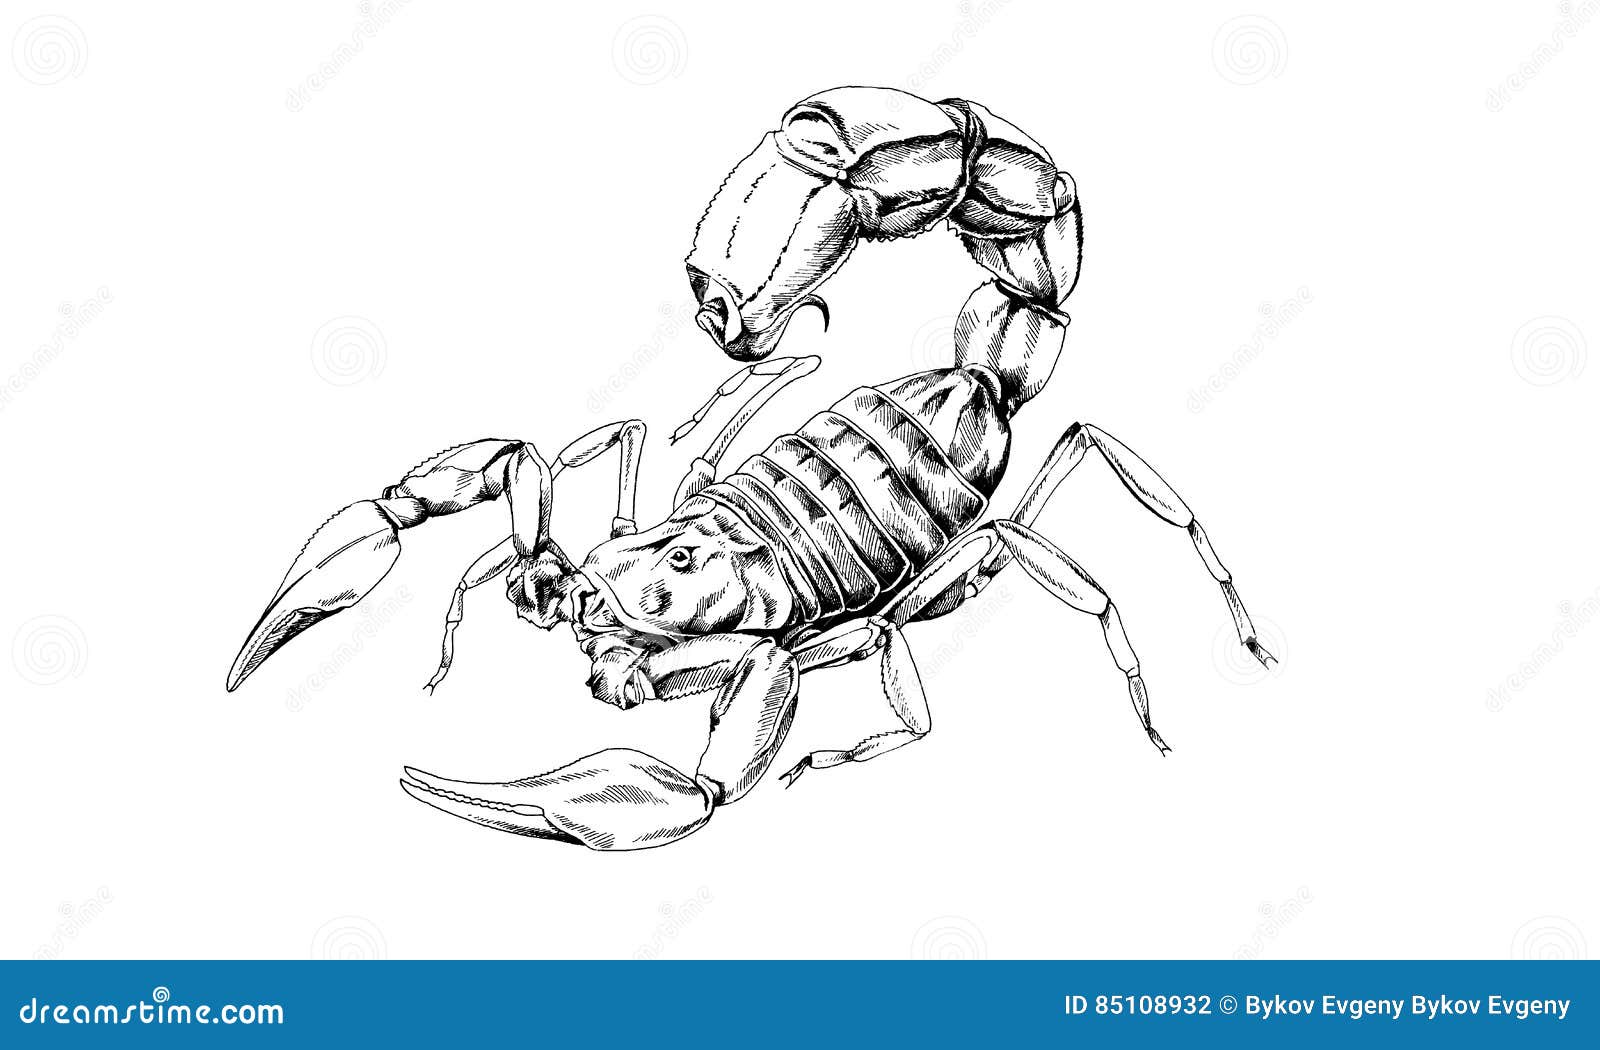 Как нарисовать скорпиона в полный рост арт